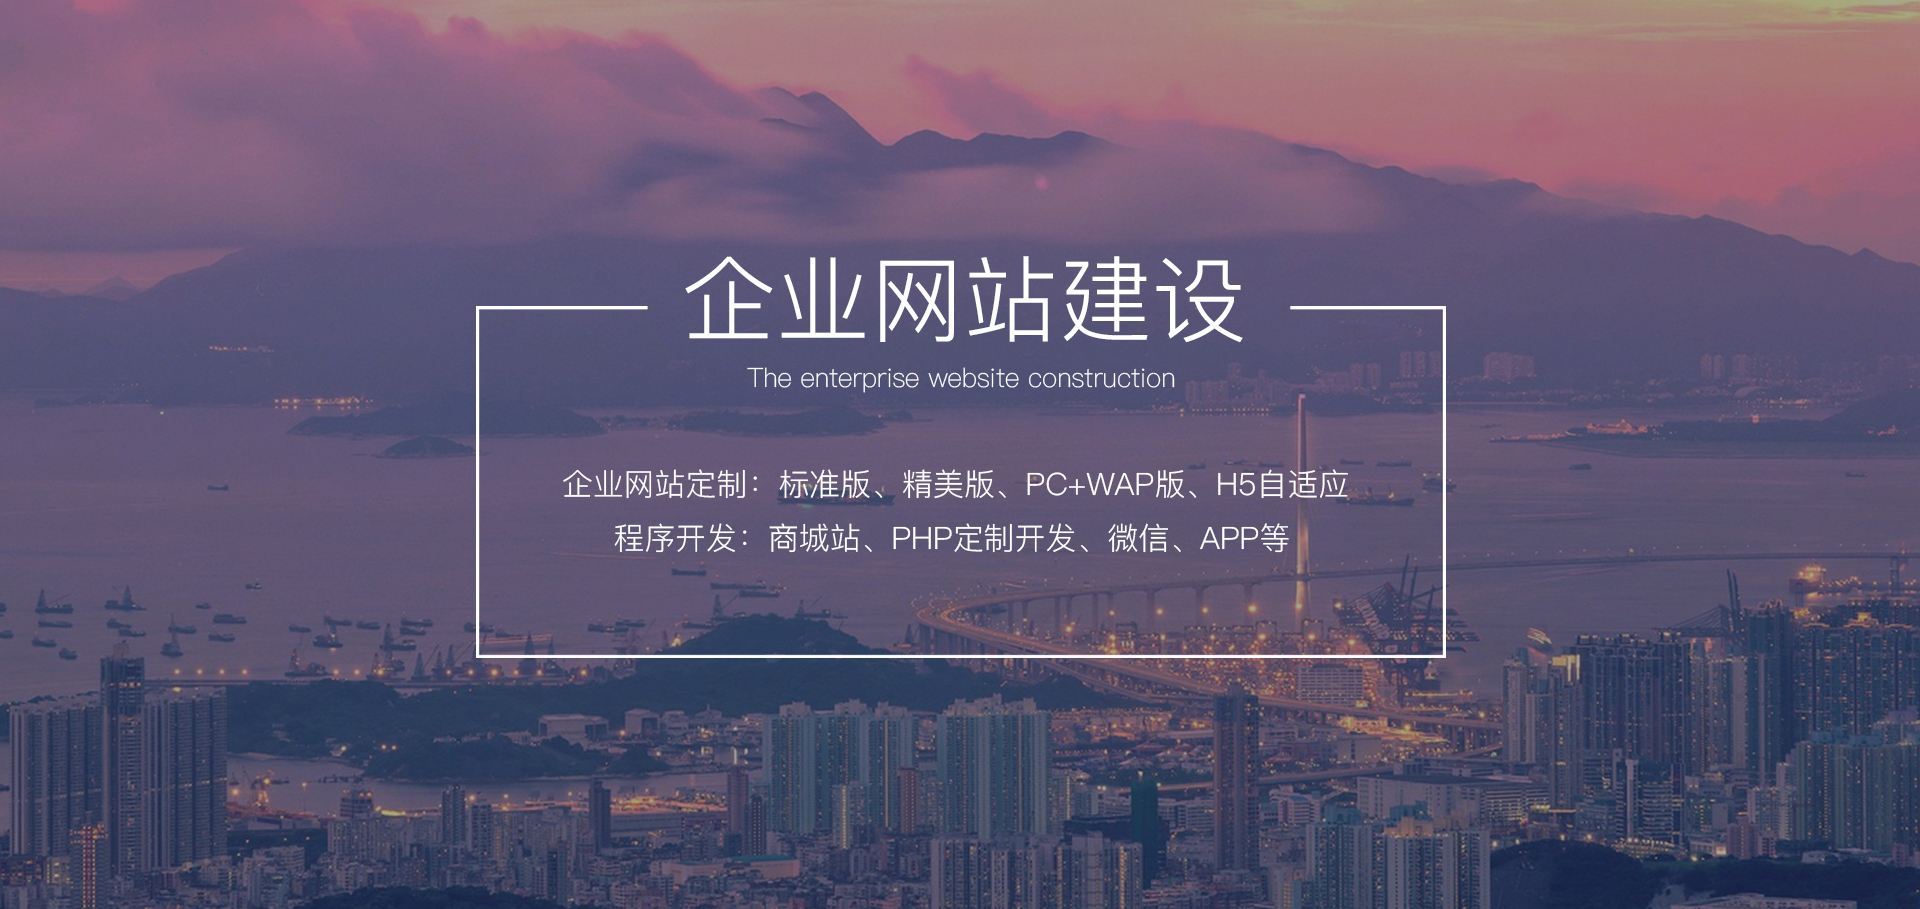 网站建设解决方案：深圳响应式网站设计与微信商城开发(图1)